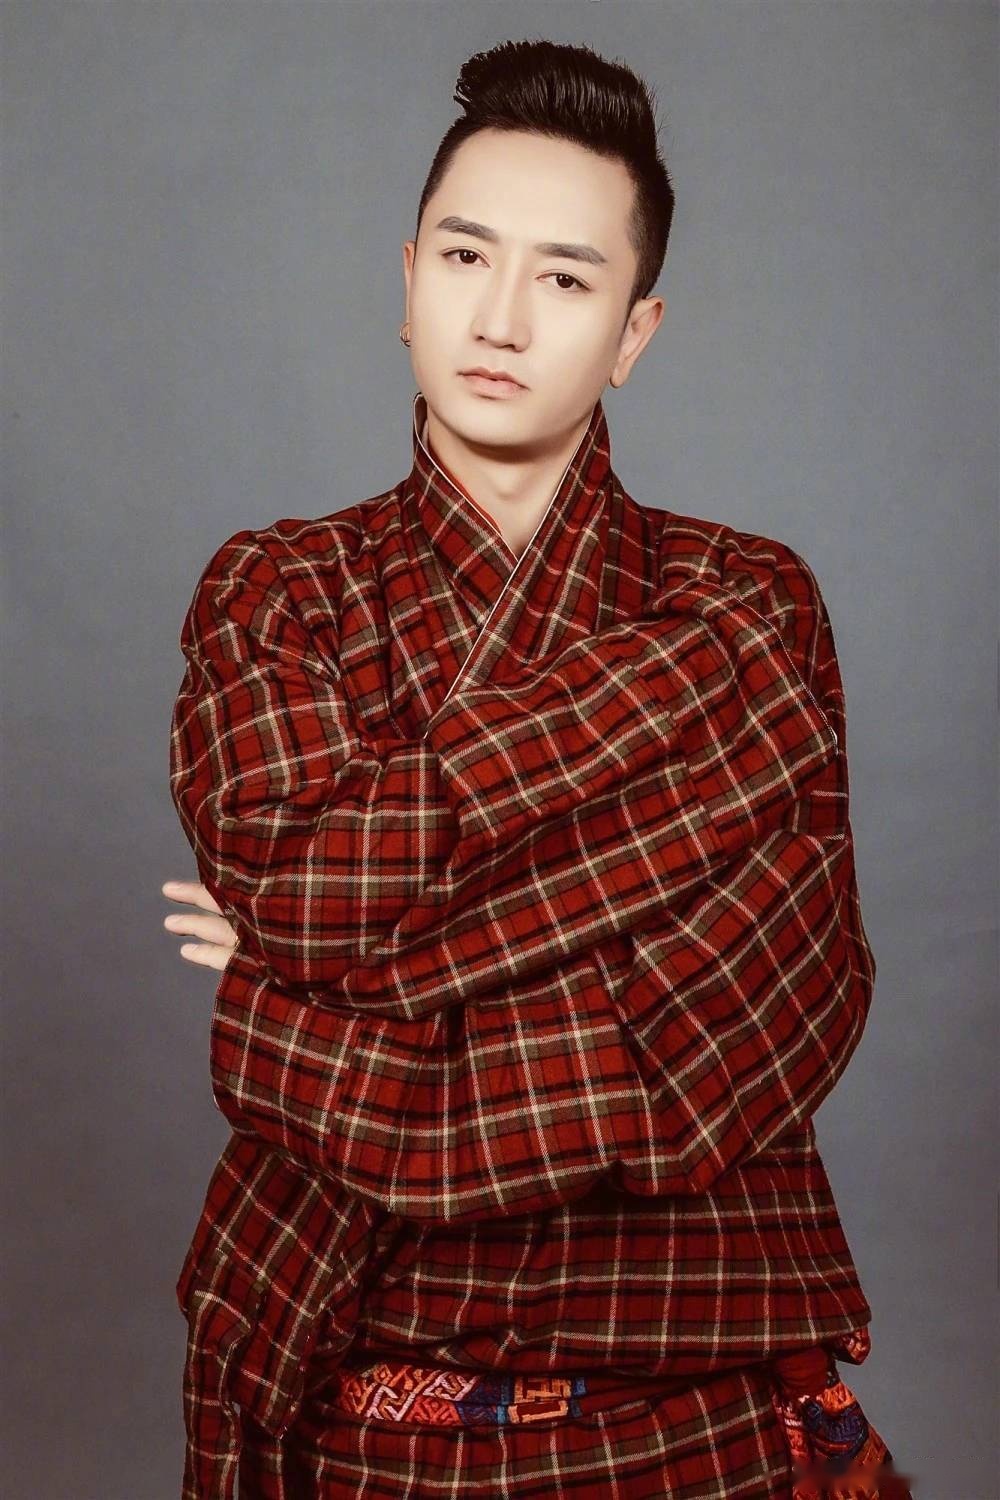 歌手姜涛年龄图片